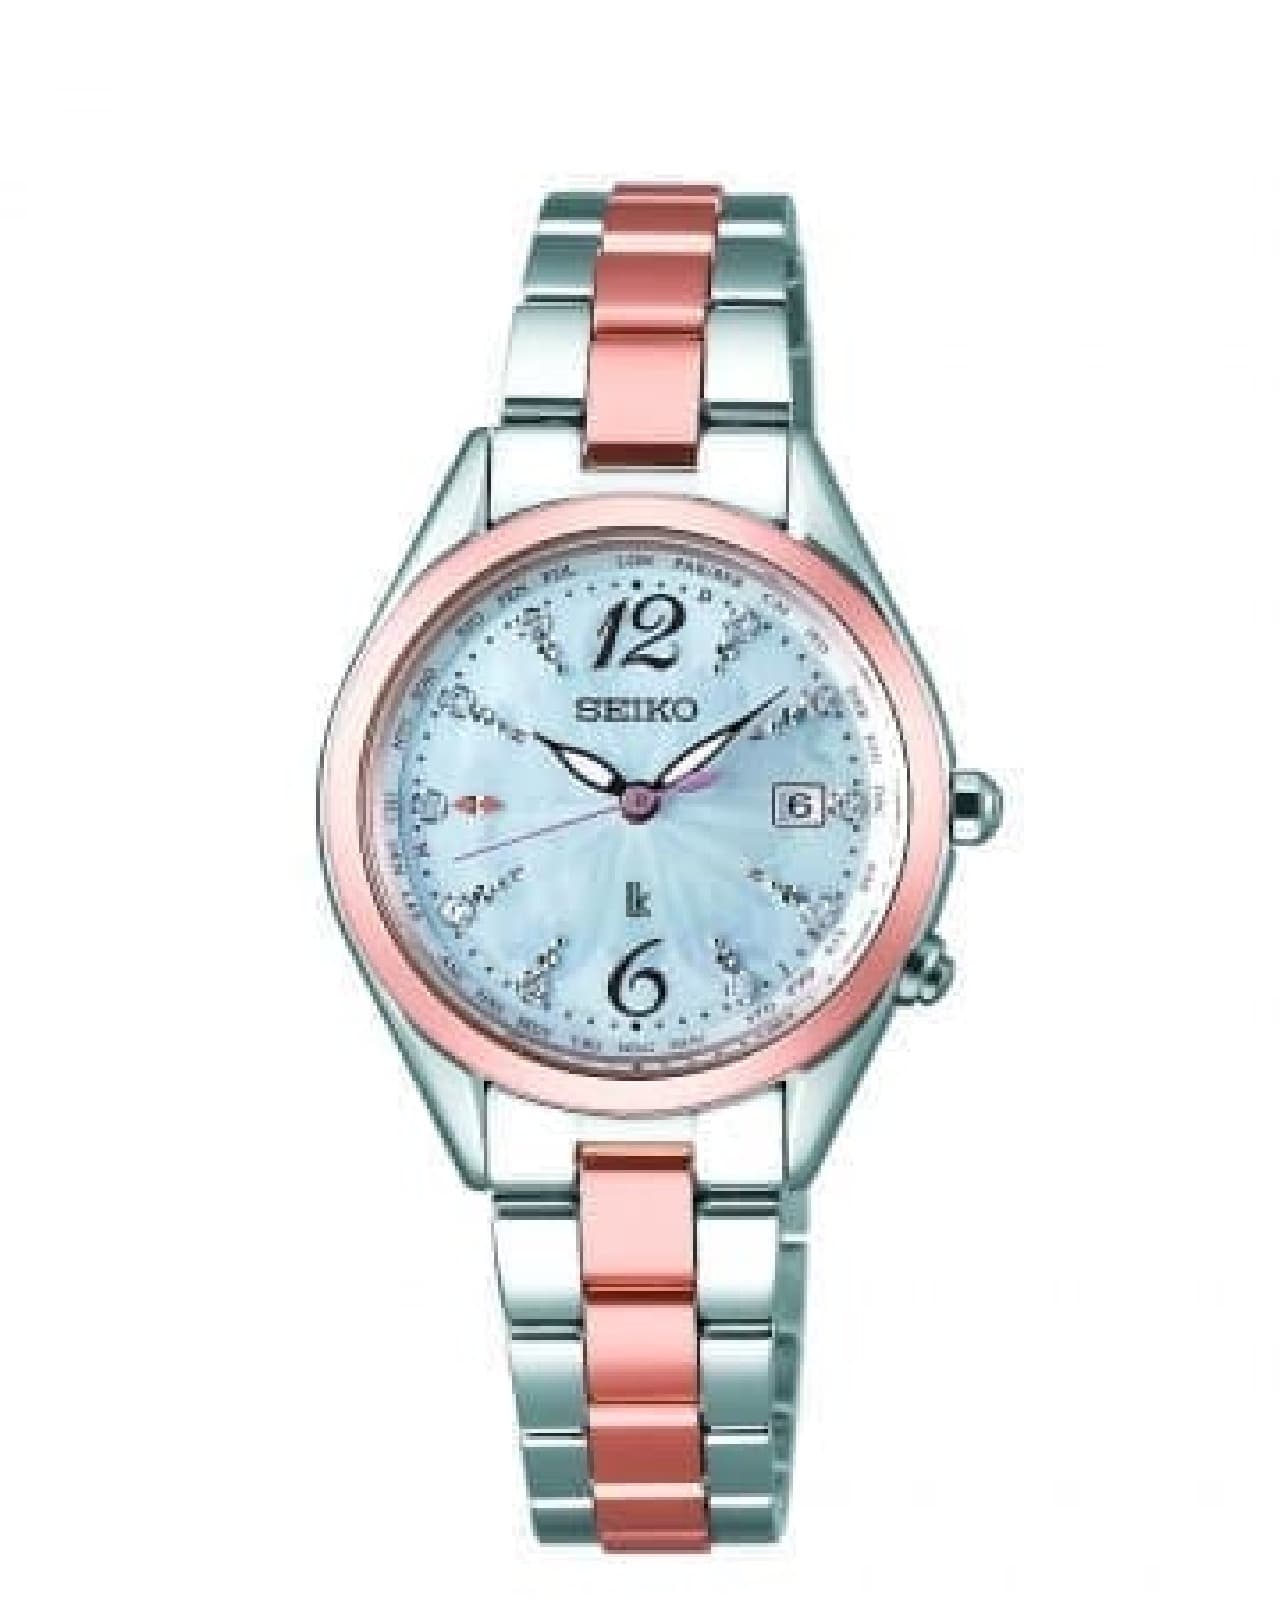 桜をデザインしたセイコーの腕時計「2018 SAKURA Blooming 限定モデル」